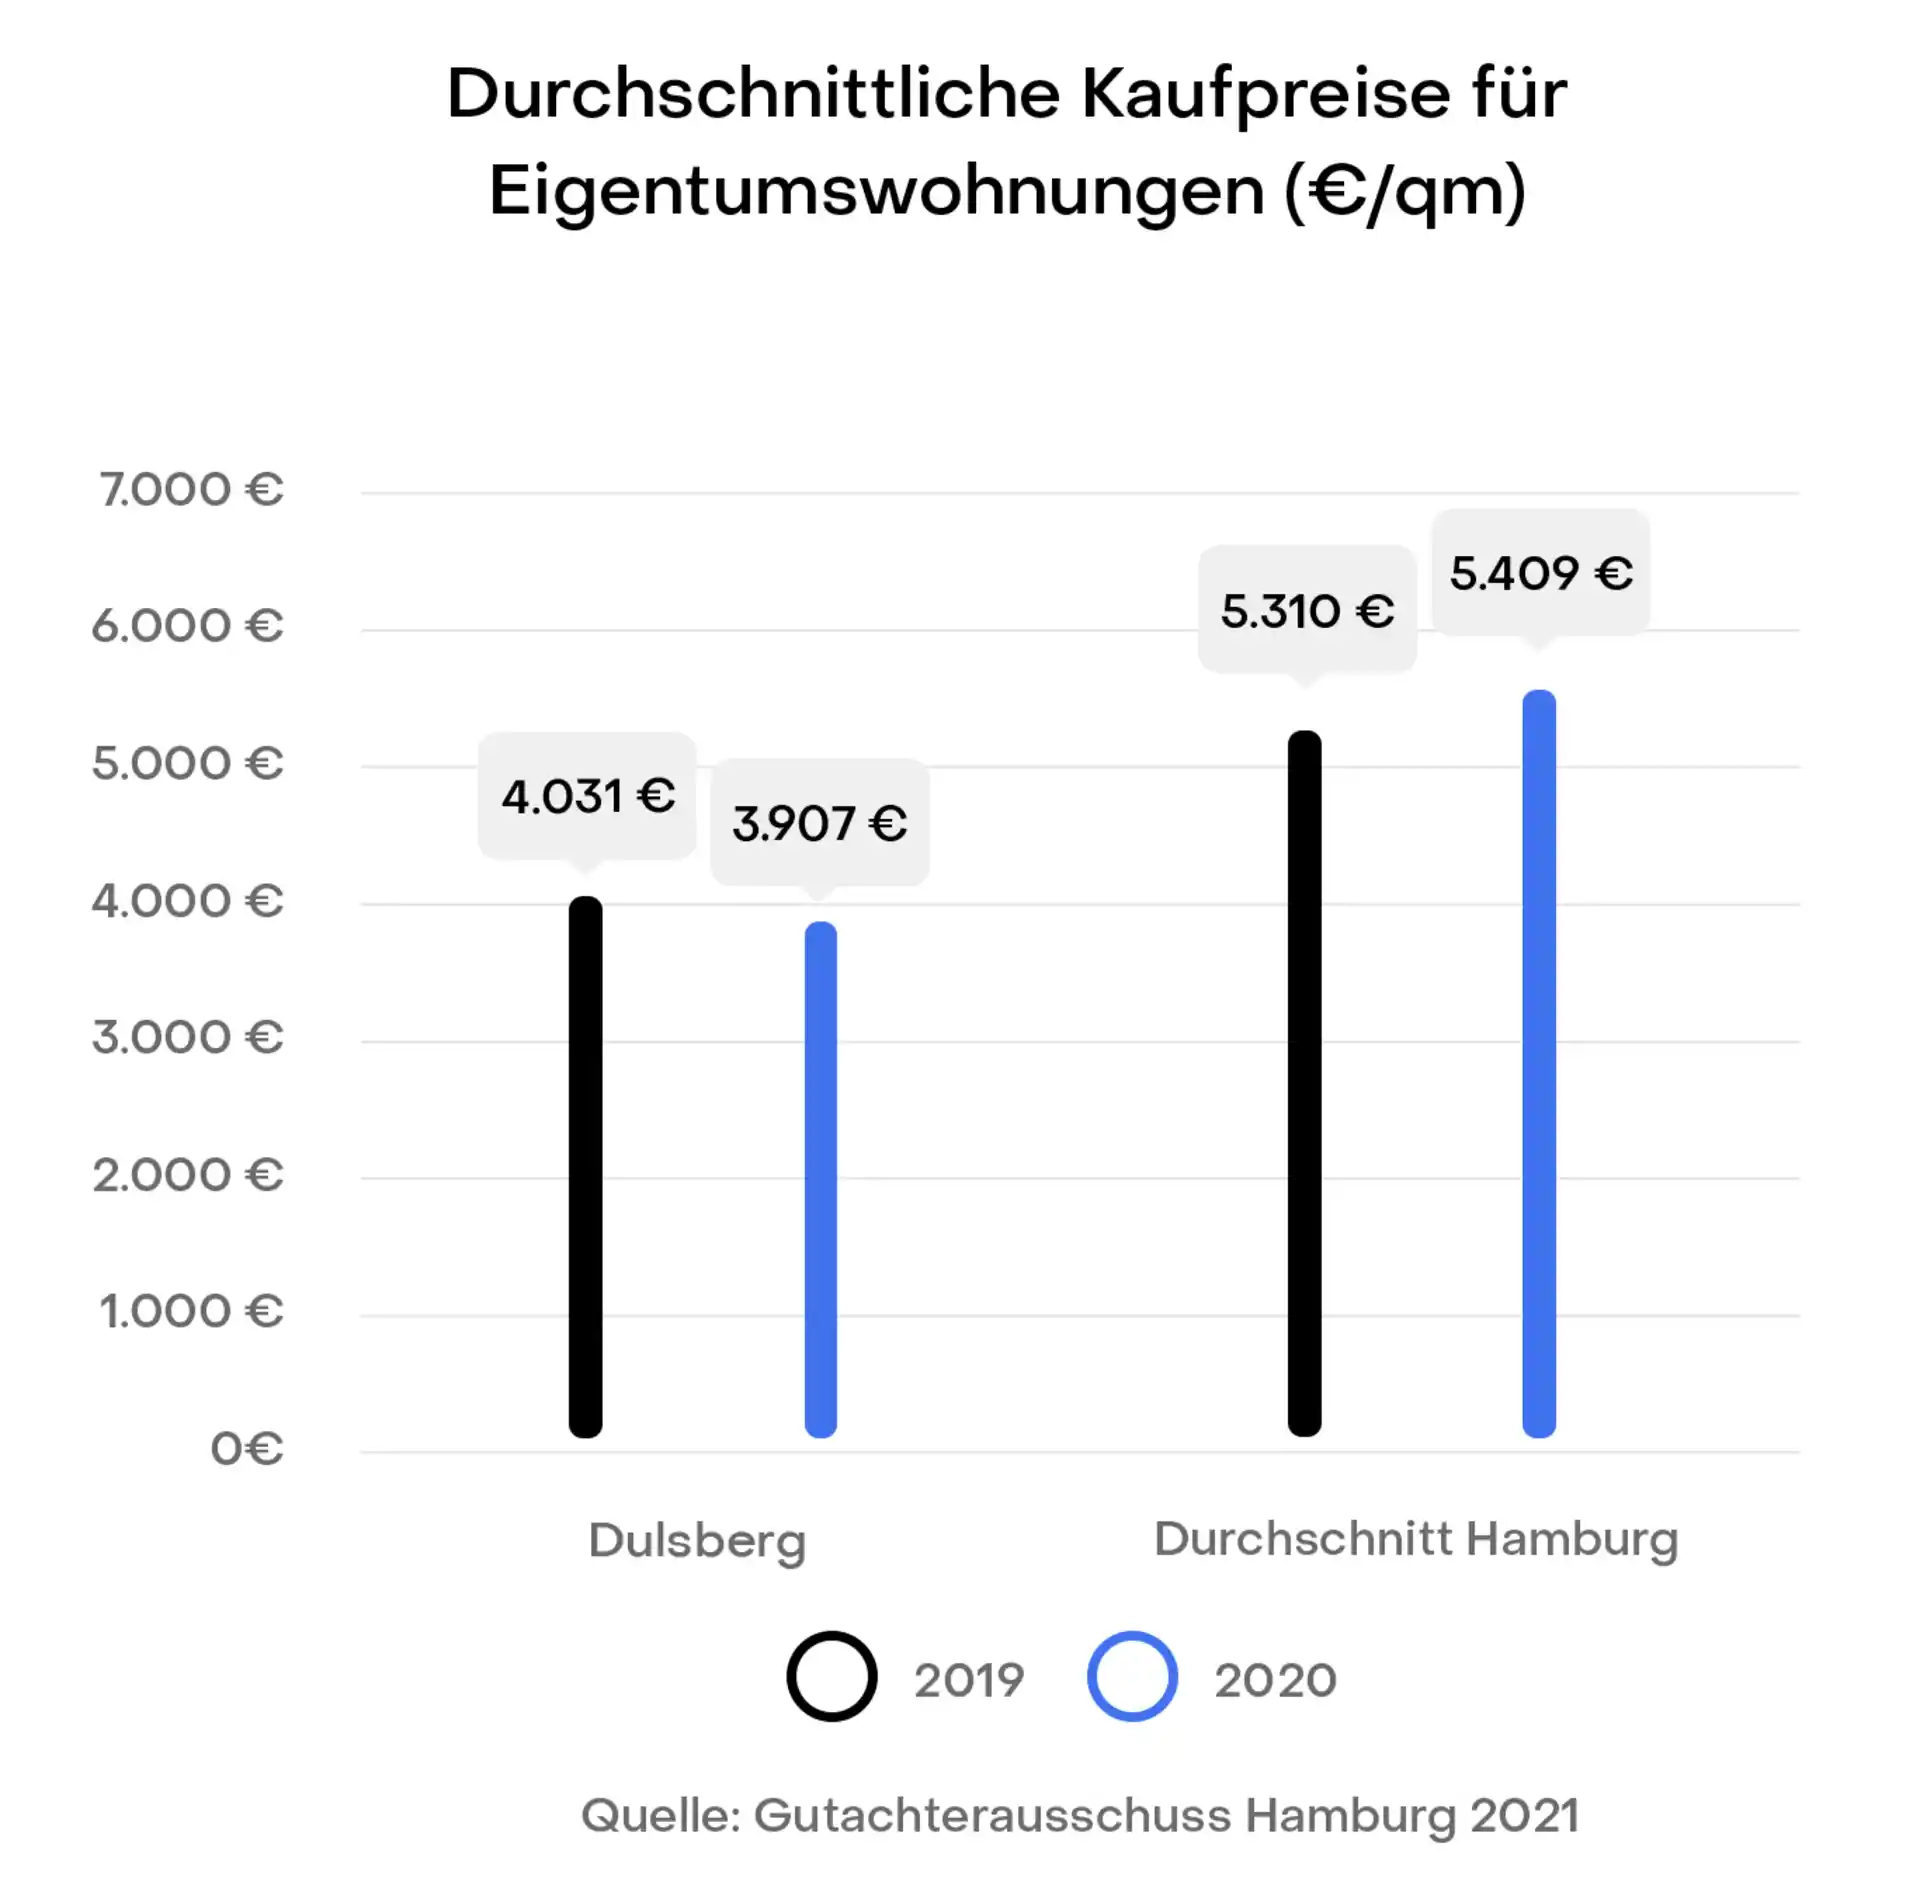 Hamburg Dulsberg Preisentwicklung Immobilien Kaufpreise
Gutachterausschuss